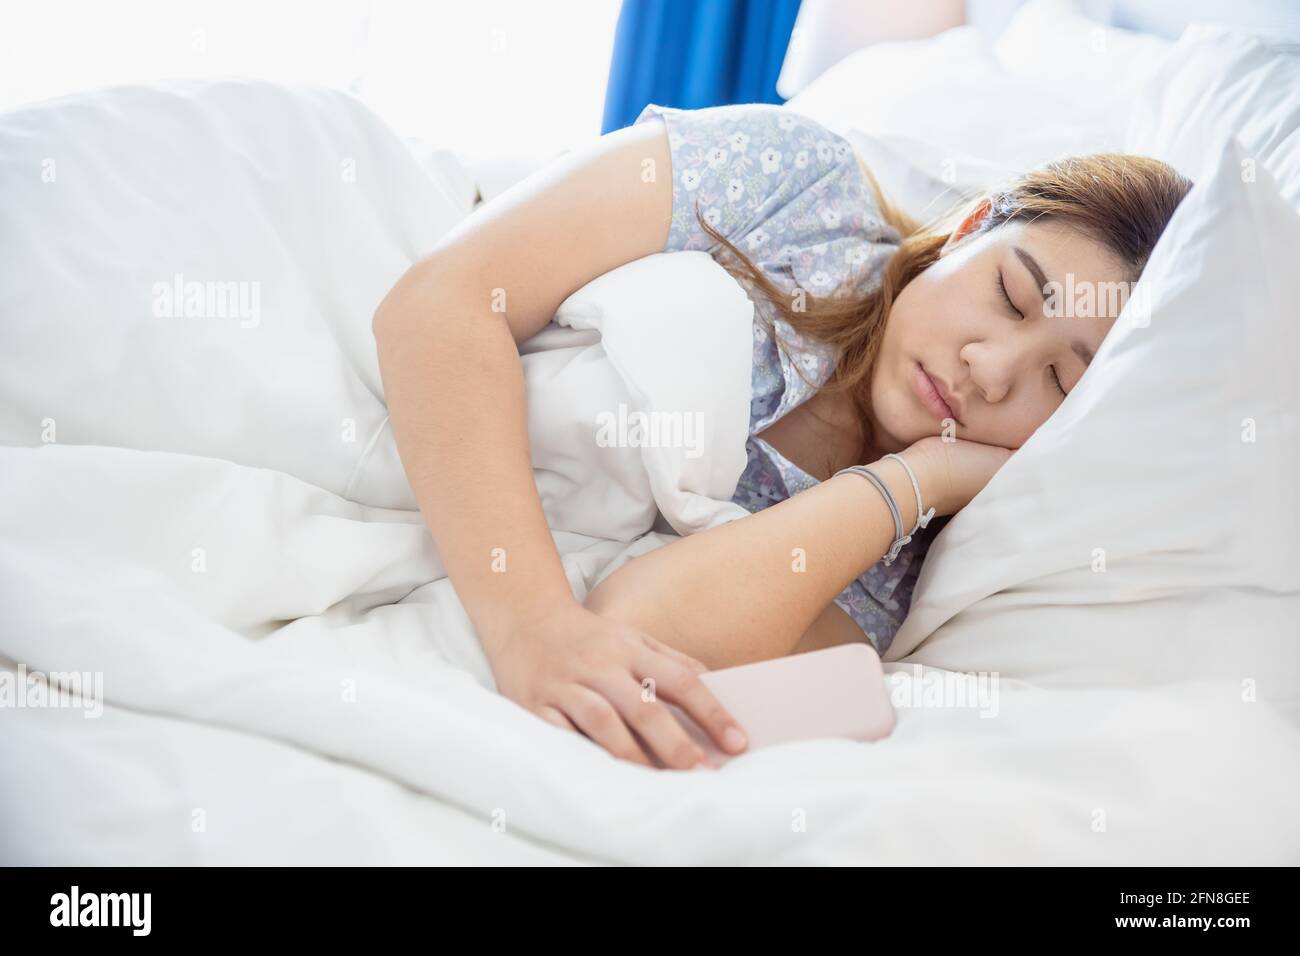 Les femmes dormant dans un lit blanc confortable, asiatique chubby jeune fille de graisse de repos avec le téléphone cellulaire. Banque D'Images